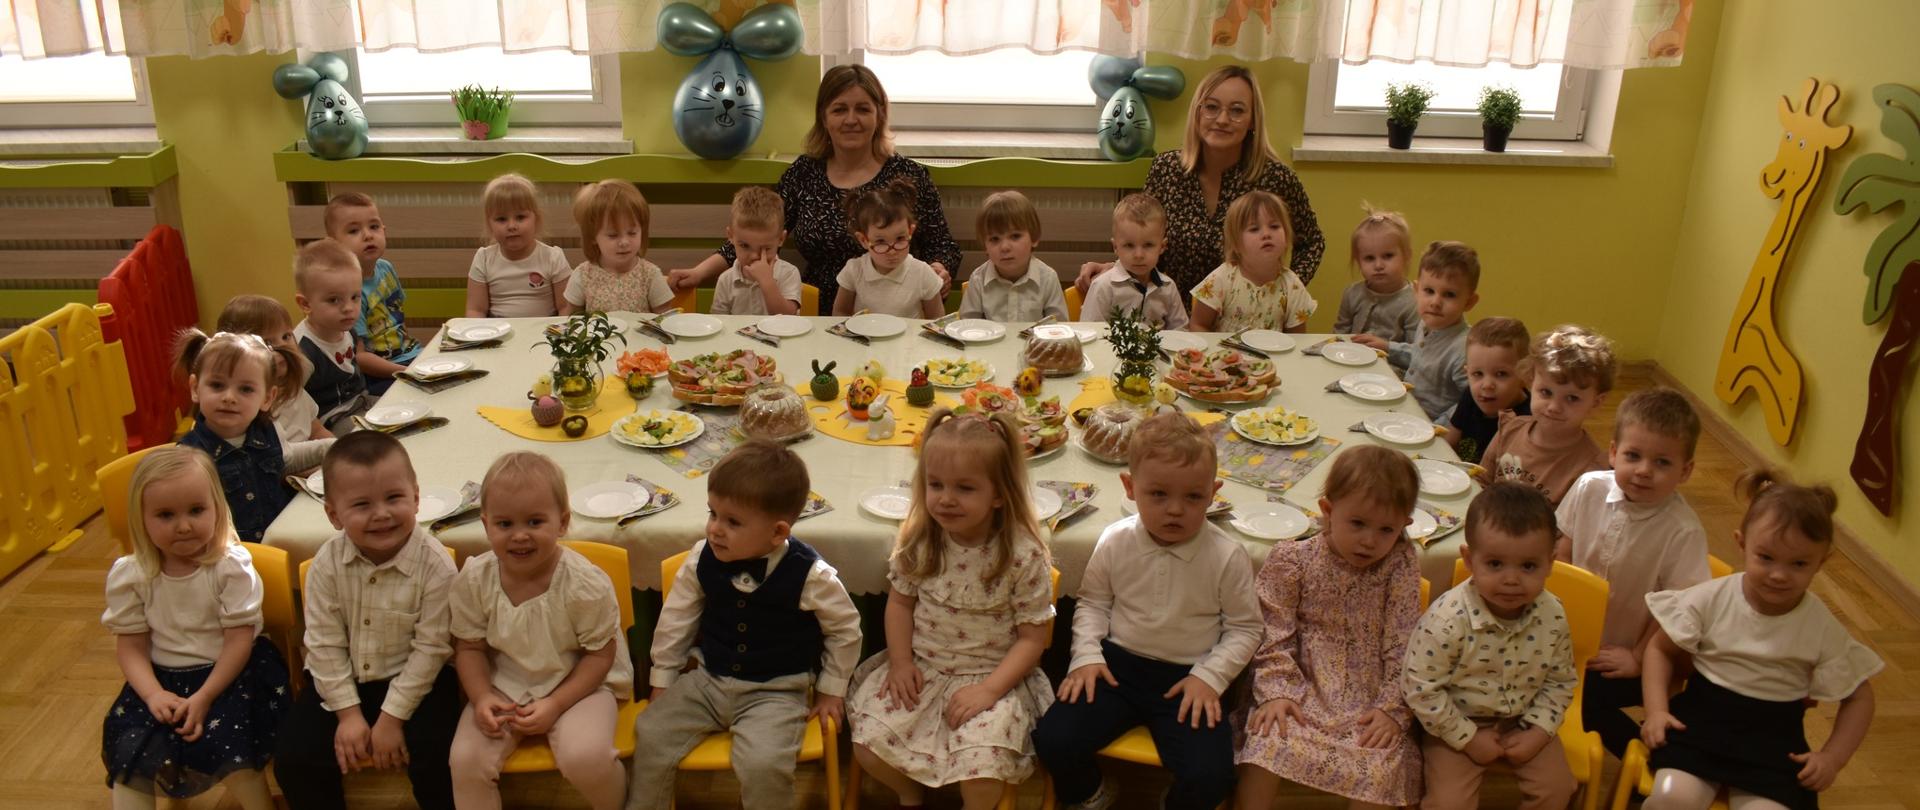 Na zdjęciu widać grupę dzieci siedzącą przy stole wielkanocnym. stół jest przykryty białym obrusem a na stole widać symbole i potrawy związane z Wielkanocą. za dziećmi siedzą trzy opoiekunki.